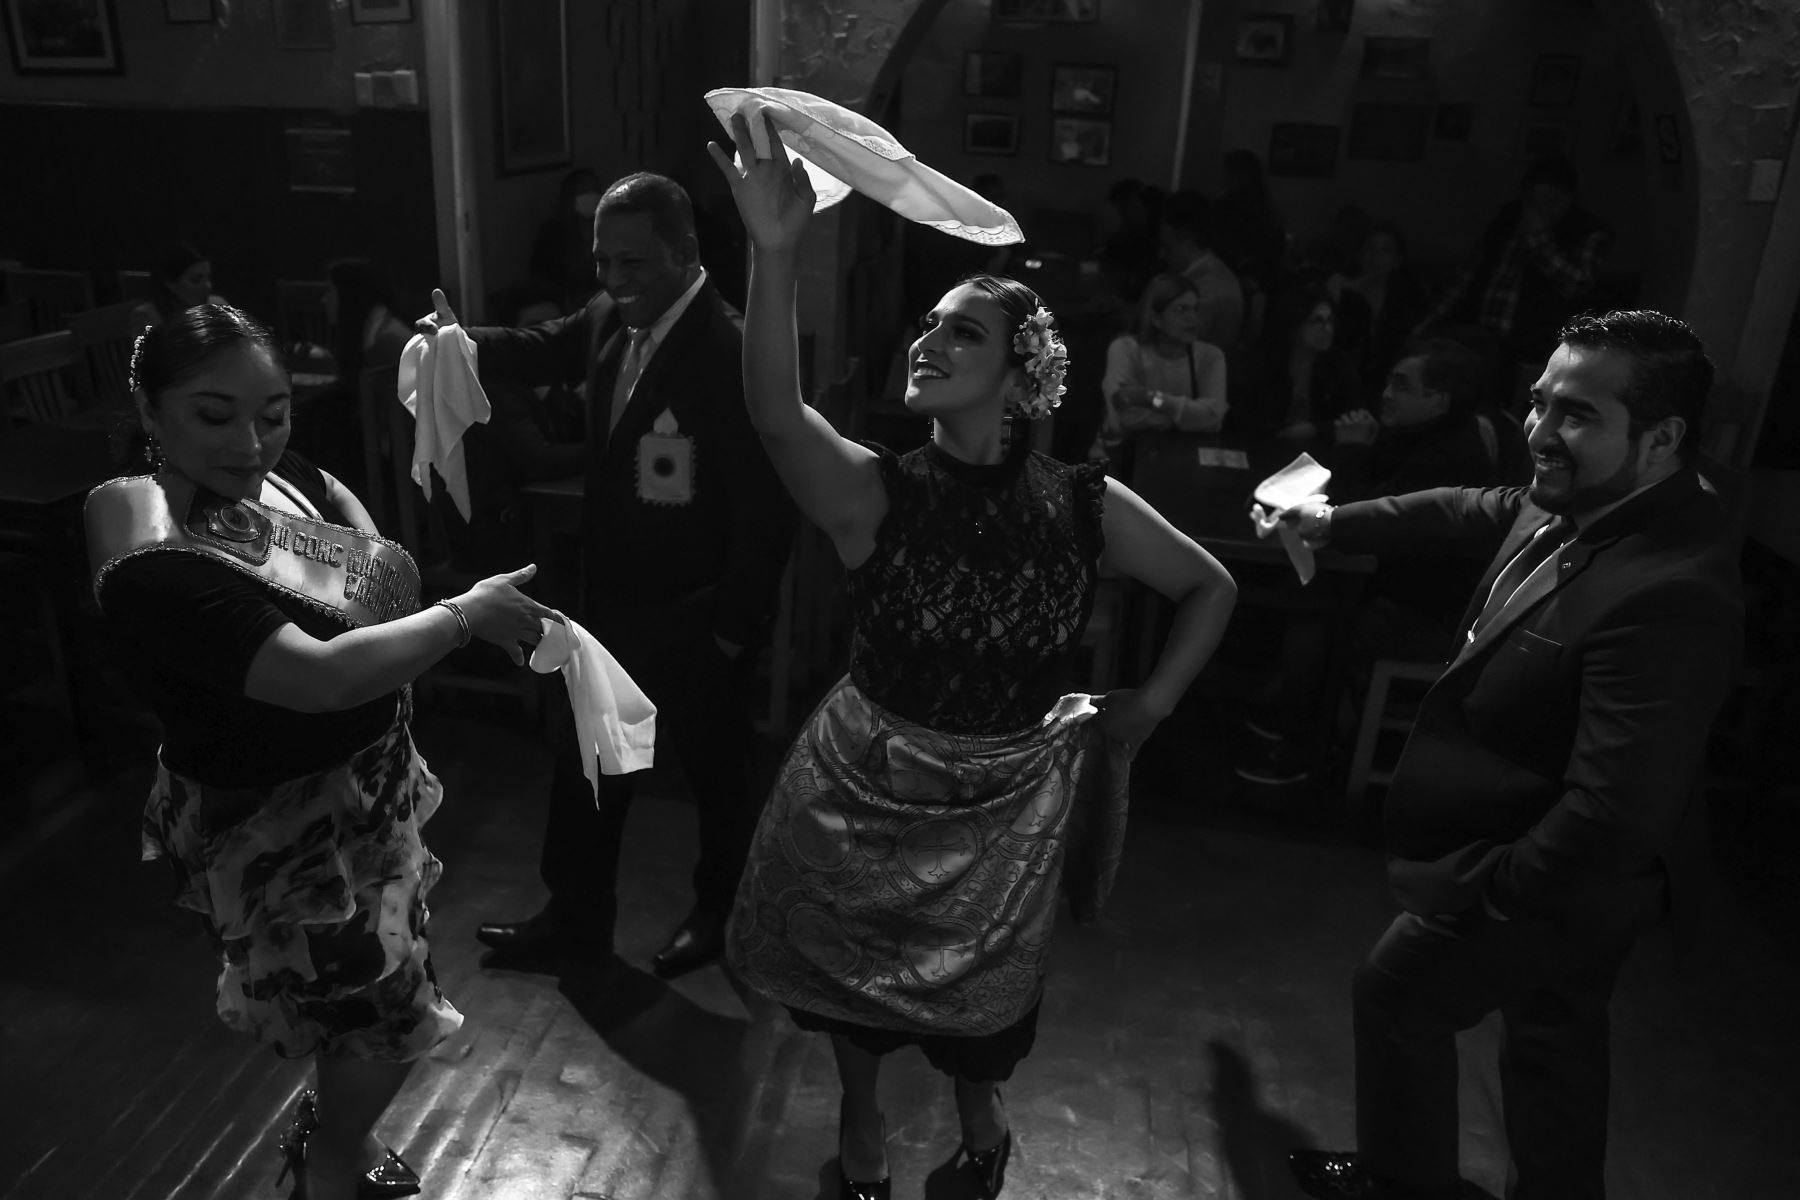 La marinera es el baile nacional por excelencia, existen en nuestro país numerosas variantes de esta danza tradicional peruana. La Marinera Limeña es una de ellas y nace en la costa central peruana en las postrimerías de la época colonial, a inicios de la república y es un baile de salón que además de sabor, de baile, tiene una sólida estructura. Y conocer sus secretos es un desafío para cualquier artista.
Foto: ANDINA/Andrés Valle